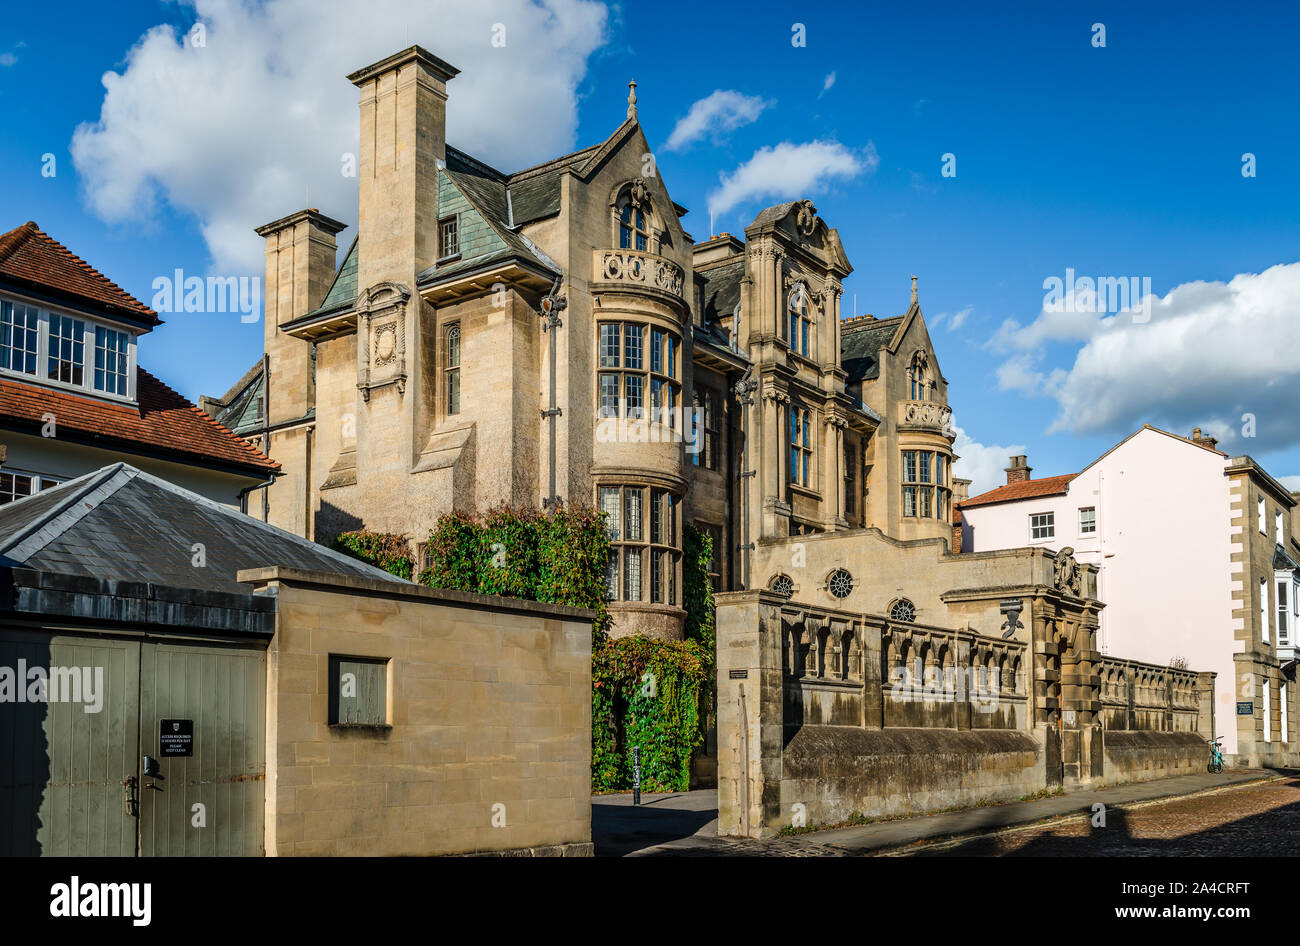 Blick auf das Merton College (vollständig: Das House or College of Scholars of Merton an der University of Oxford) in der Merton Street, Oxford, Großbritannien. Stockfoto